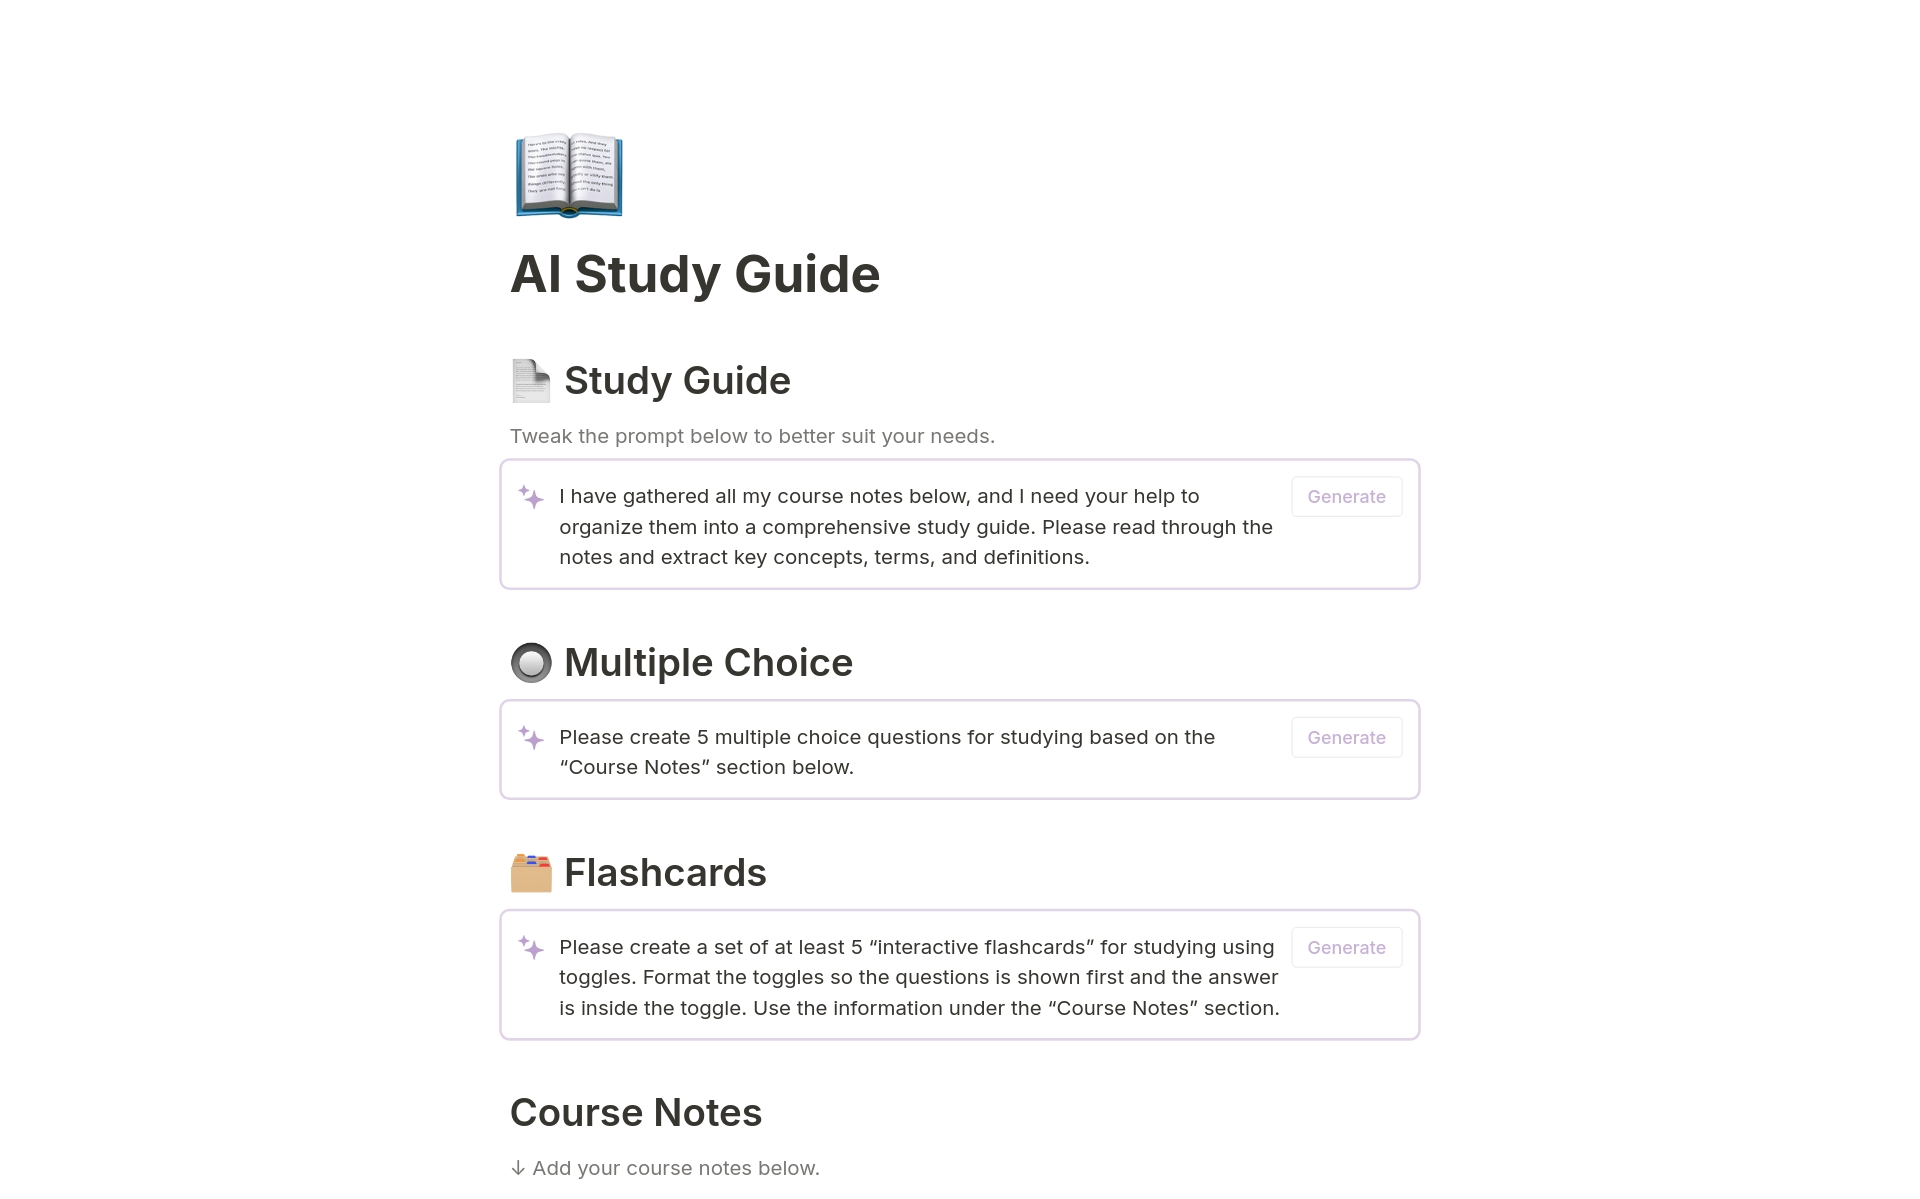 Uma prévia do modelo para AI Study Guide